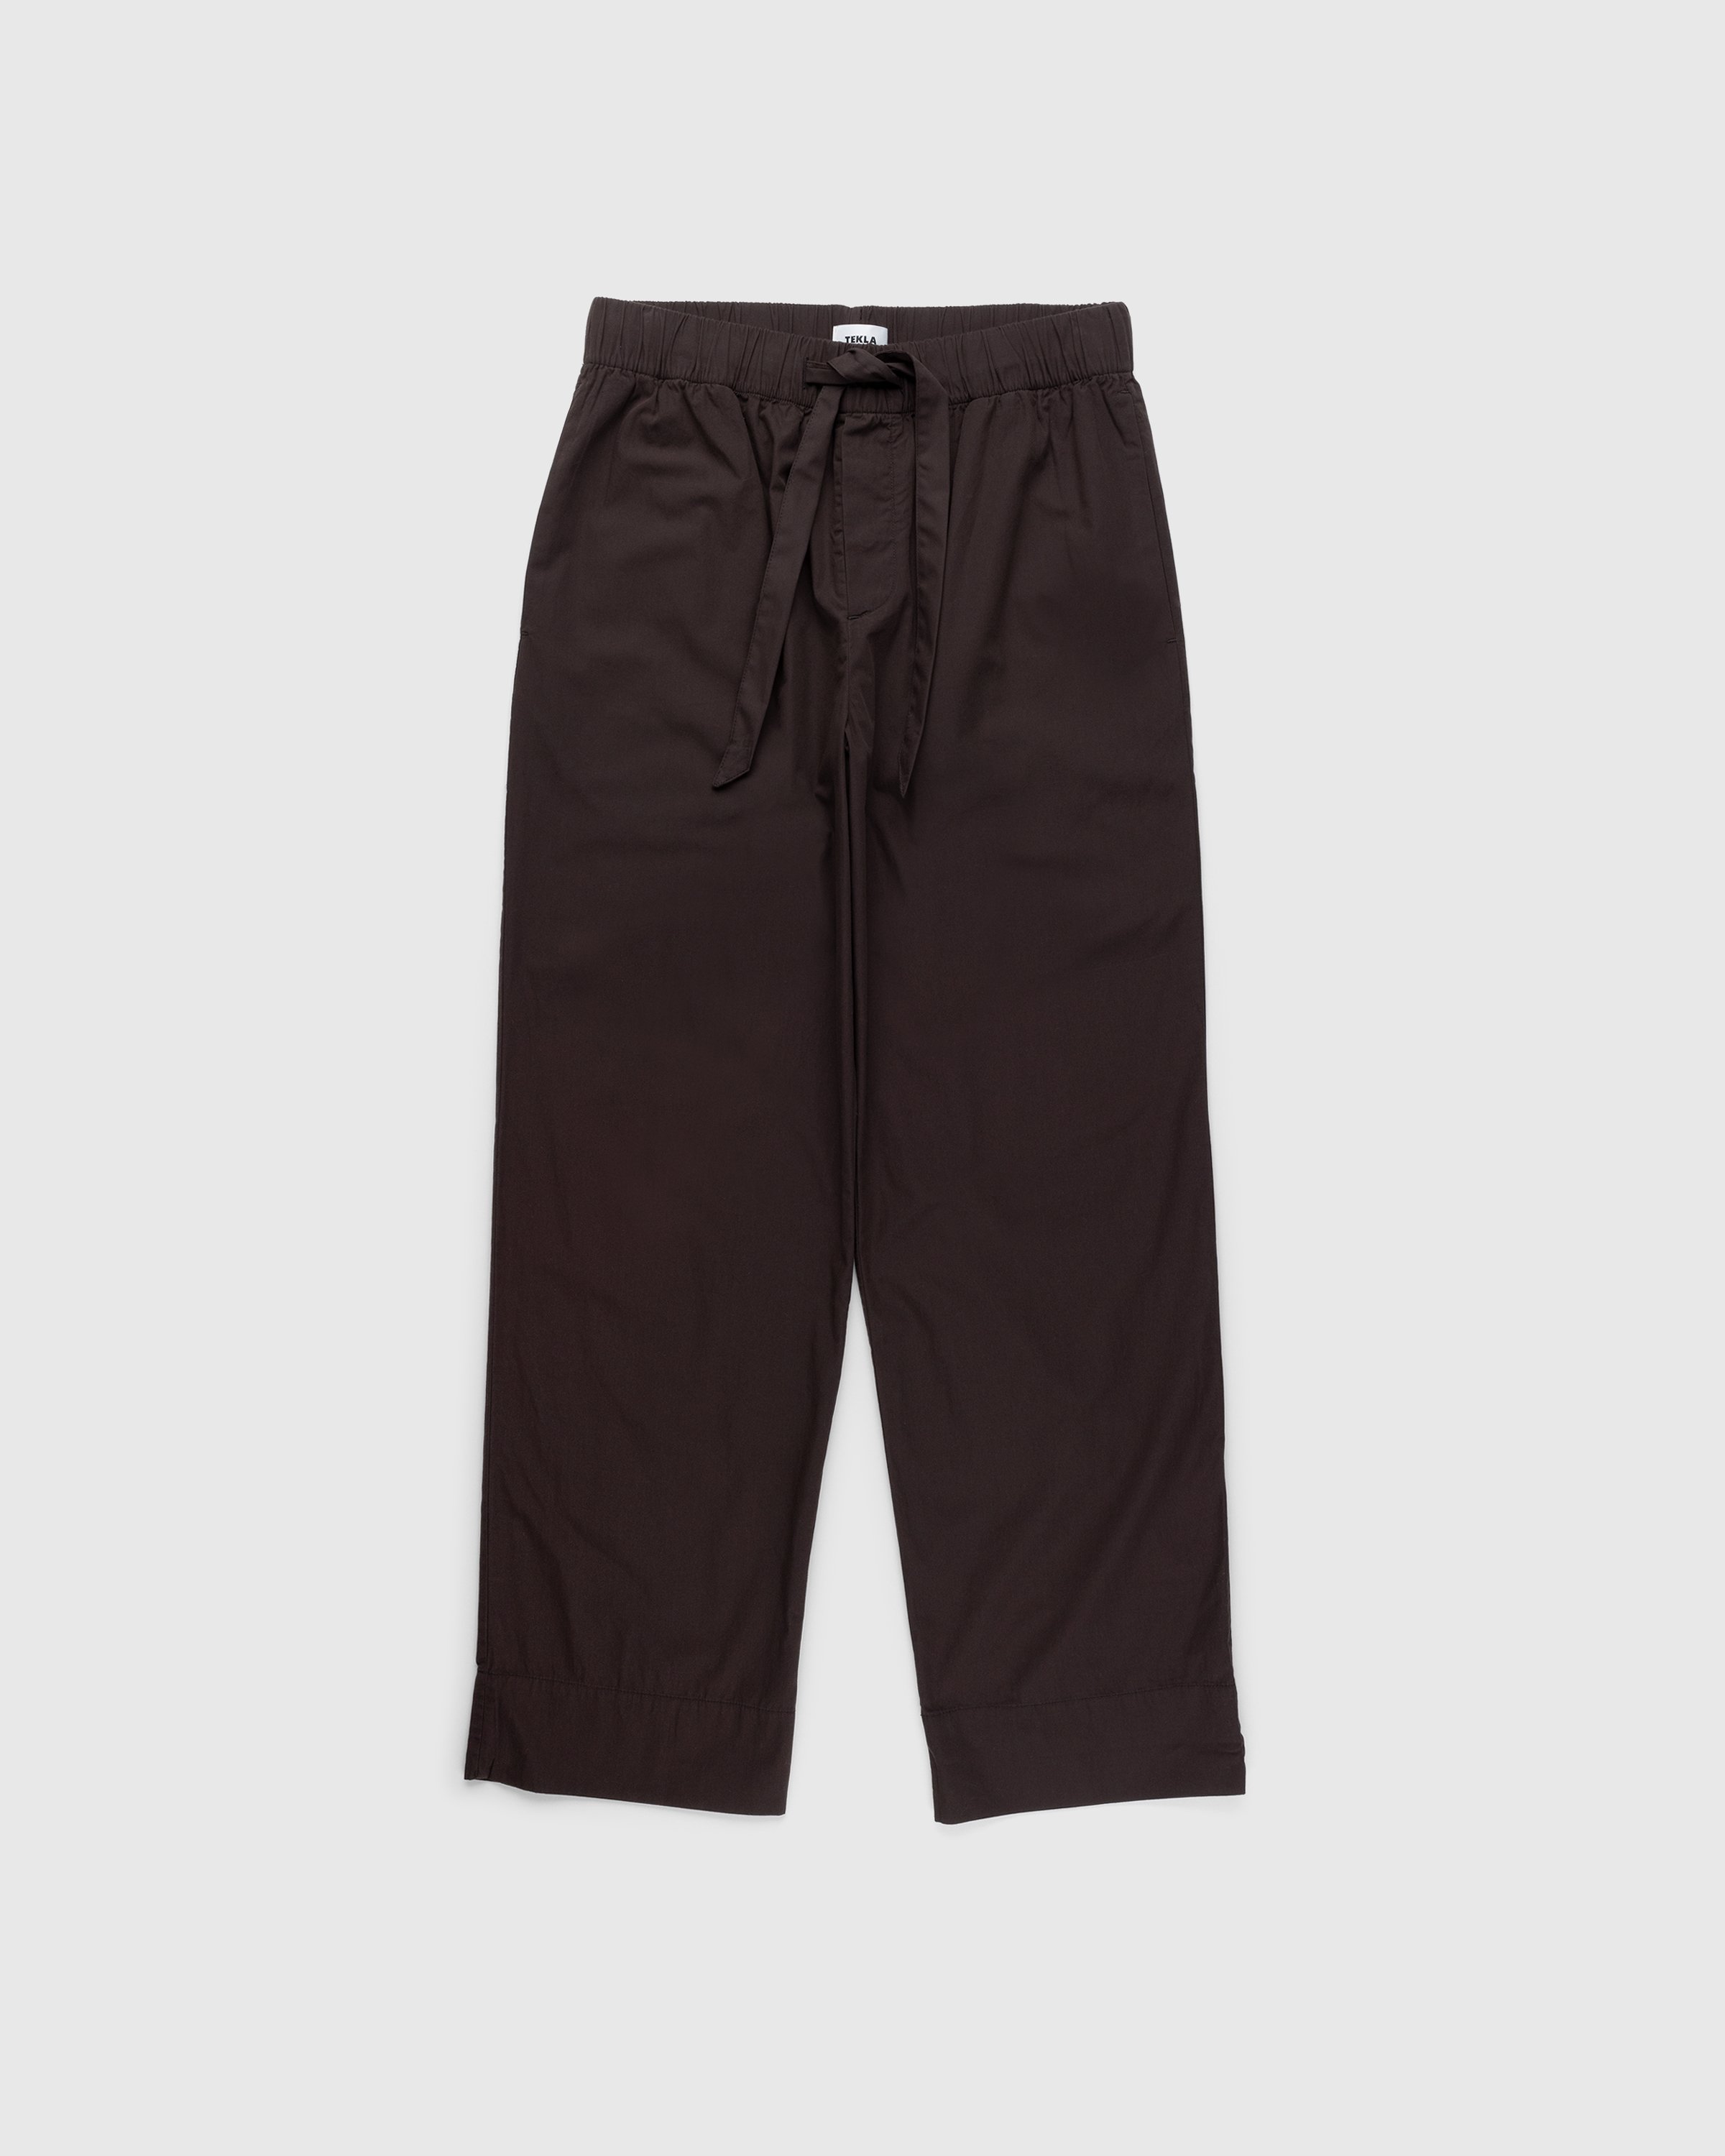 Tekla - Cotton Poplin Pyjamas Pants Coffee - Clothing - Brown - Image 1